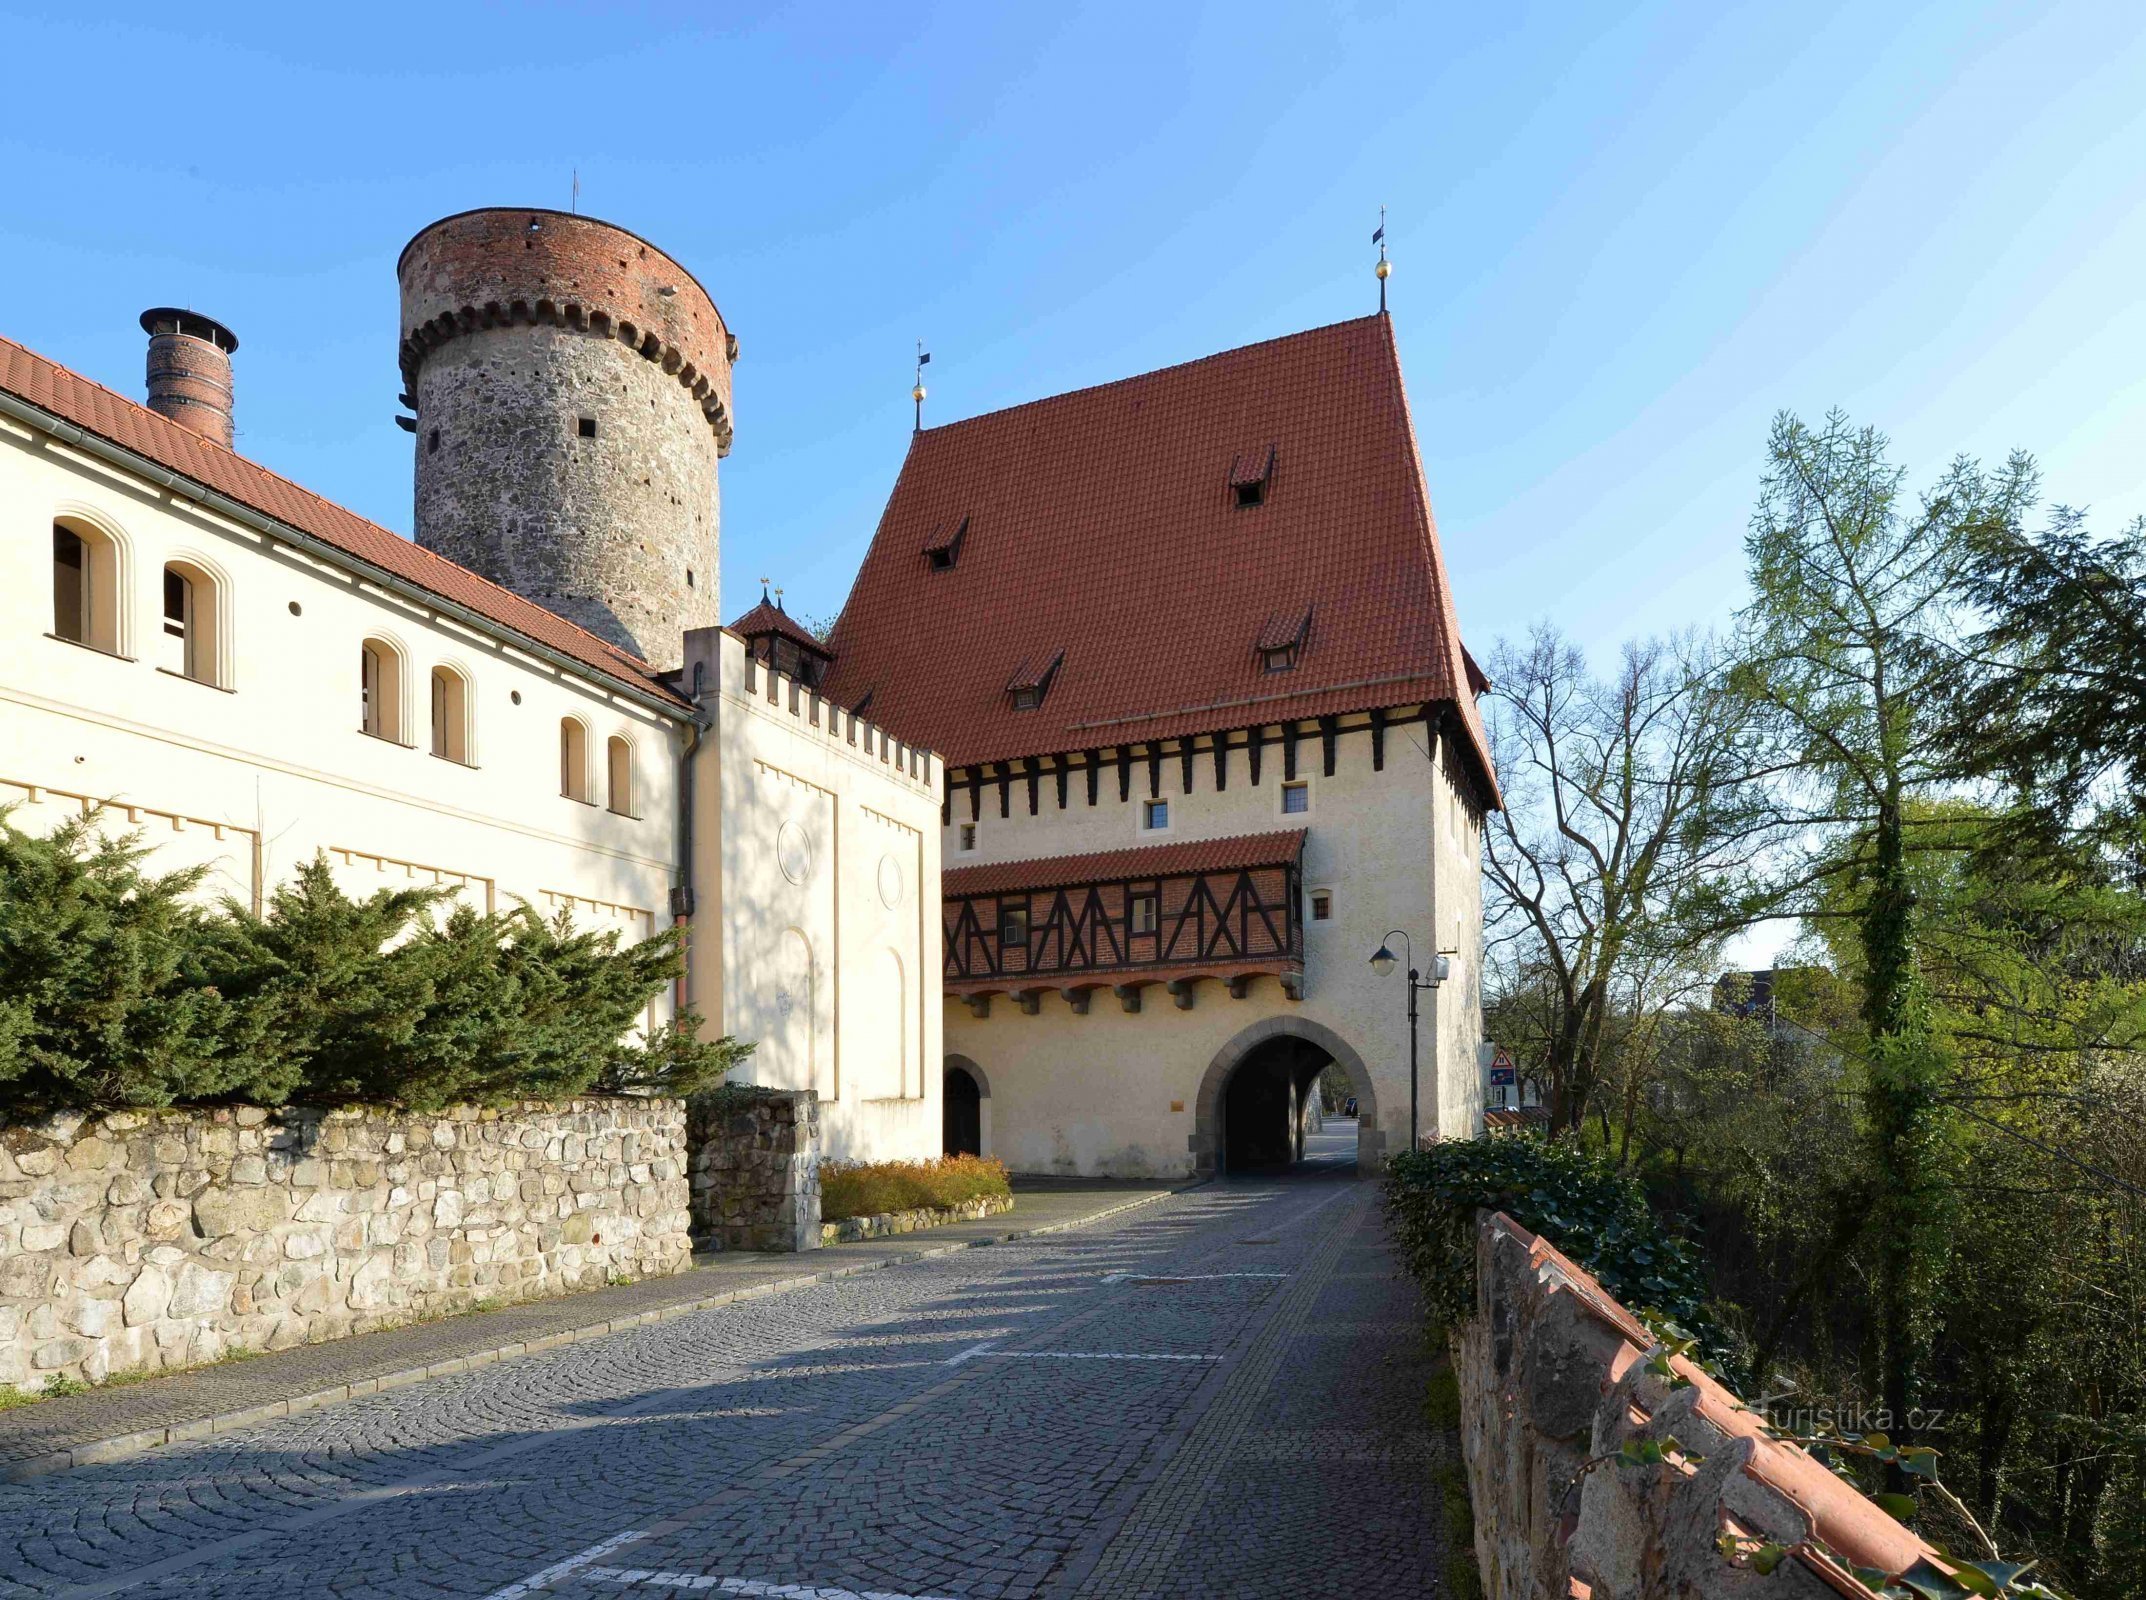 Tháp Kotnov và Cổng Bechyňská - một trong những di tích lâu đời nhất ở Tábor